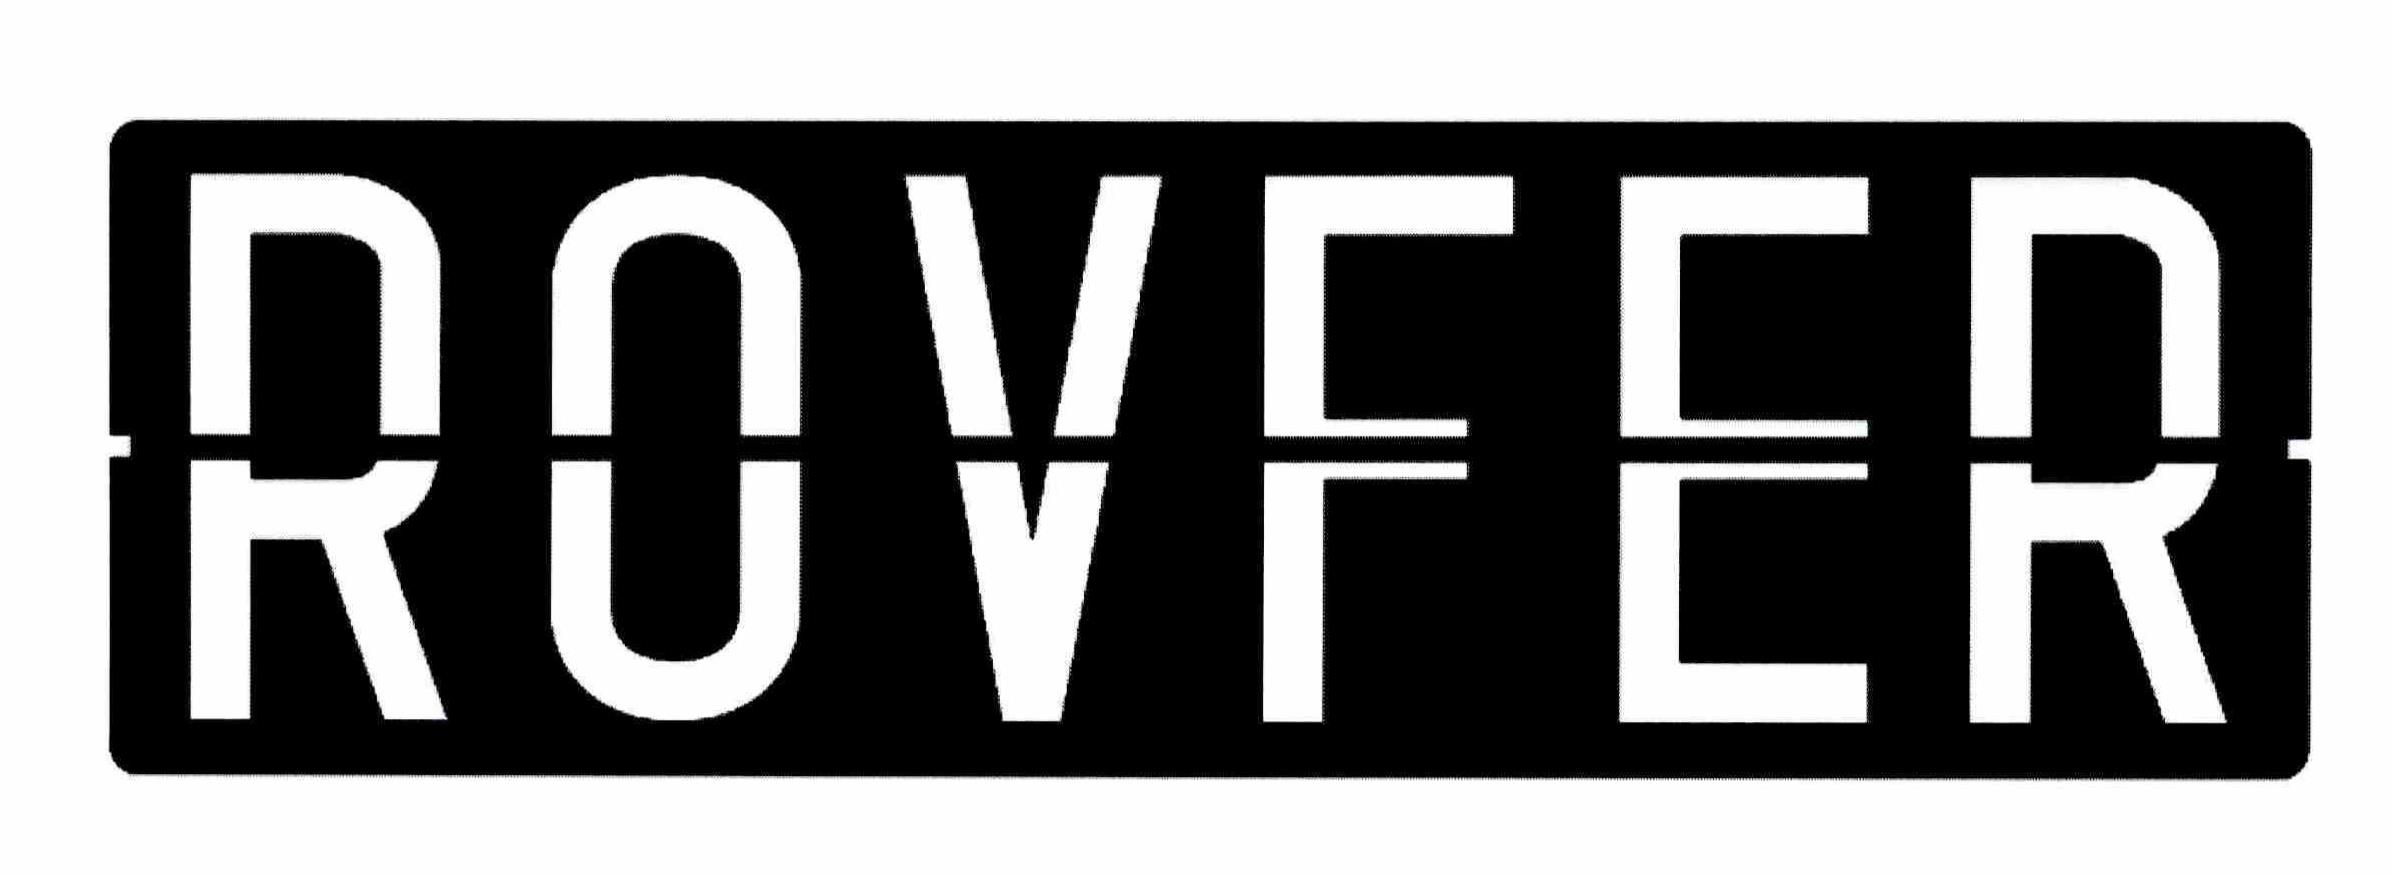 Trademark Logo ROVFER